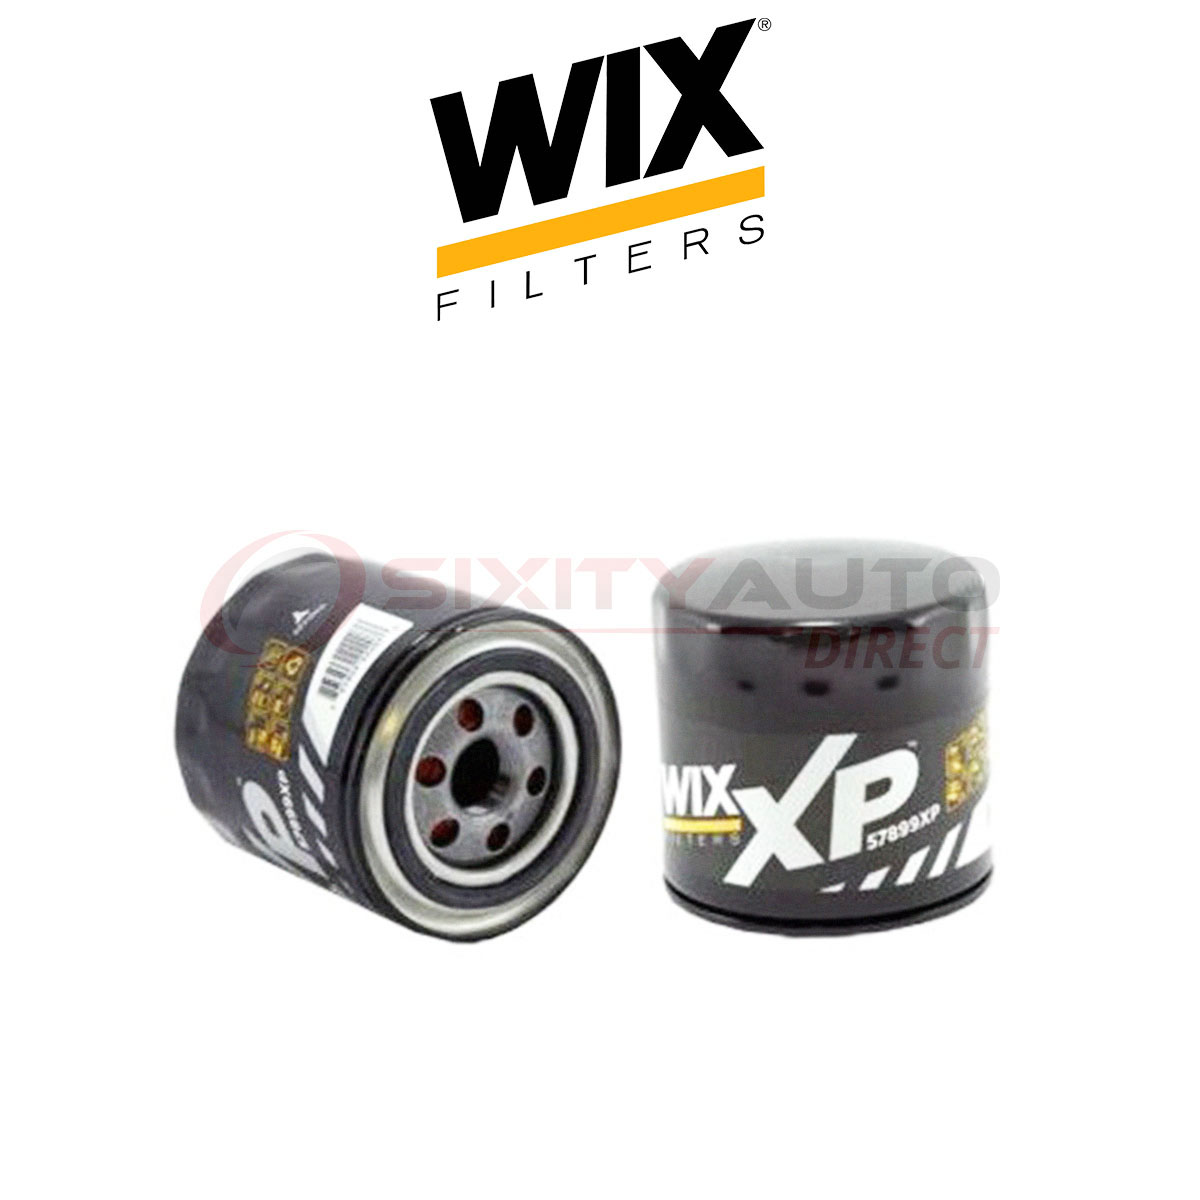 WIX Engine Oil Filter for 2011-2013 Ram 1500 4.7L 5.7L V8 - Filtration pz | eBay 2013 Ram 1500 5.7 Hemi Oil Filter